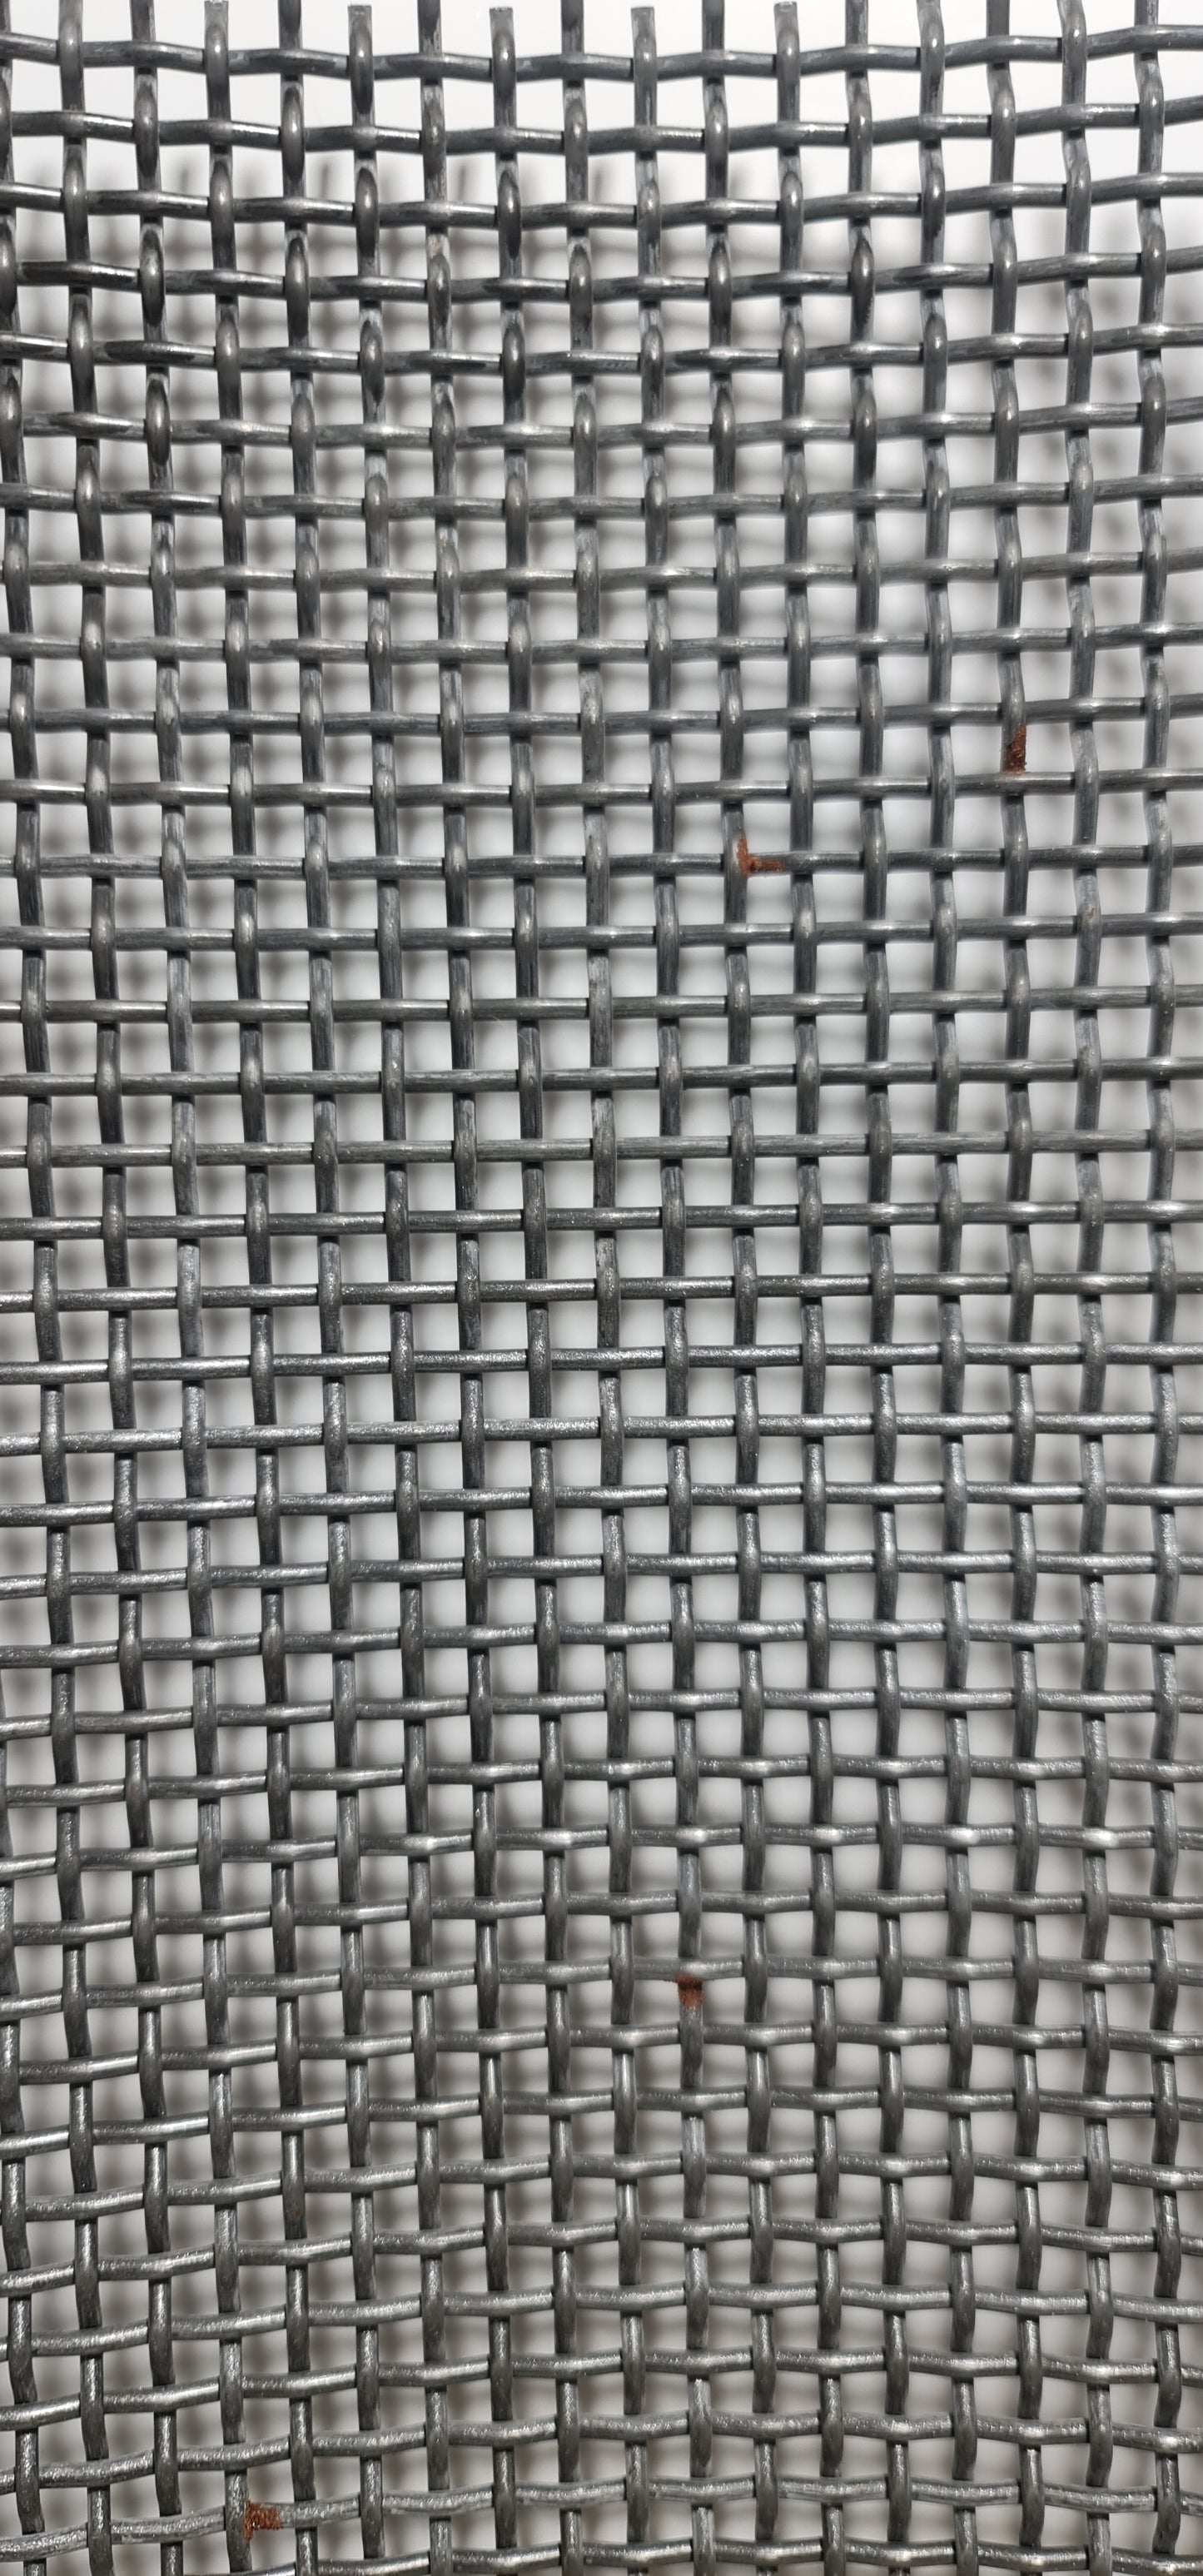 Fabric sieve 1000x660x2.5 MW 2.5 mm